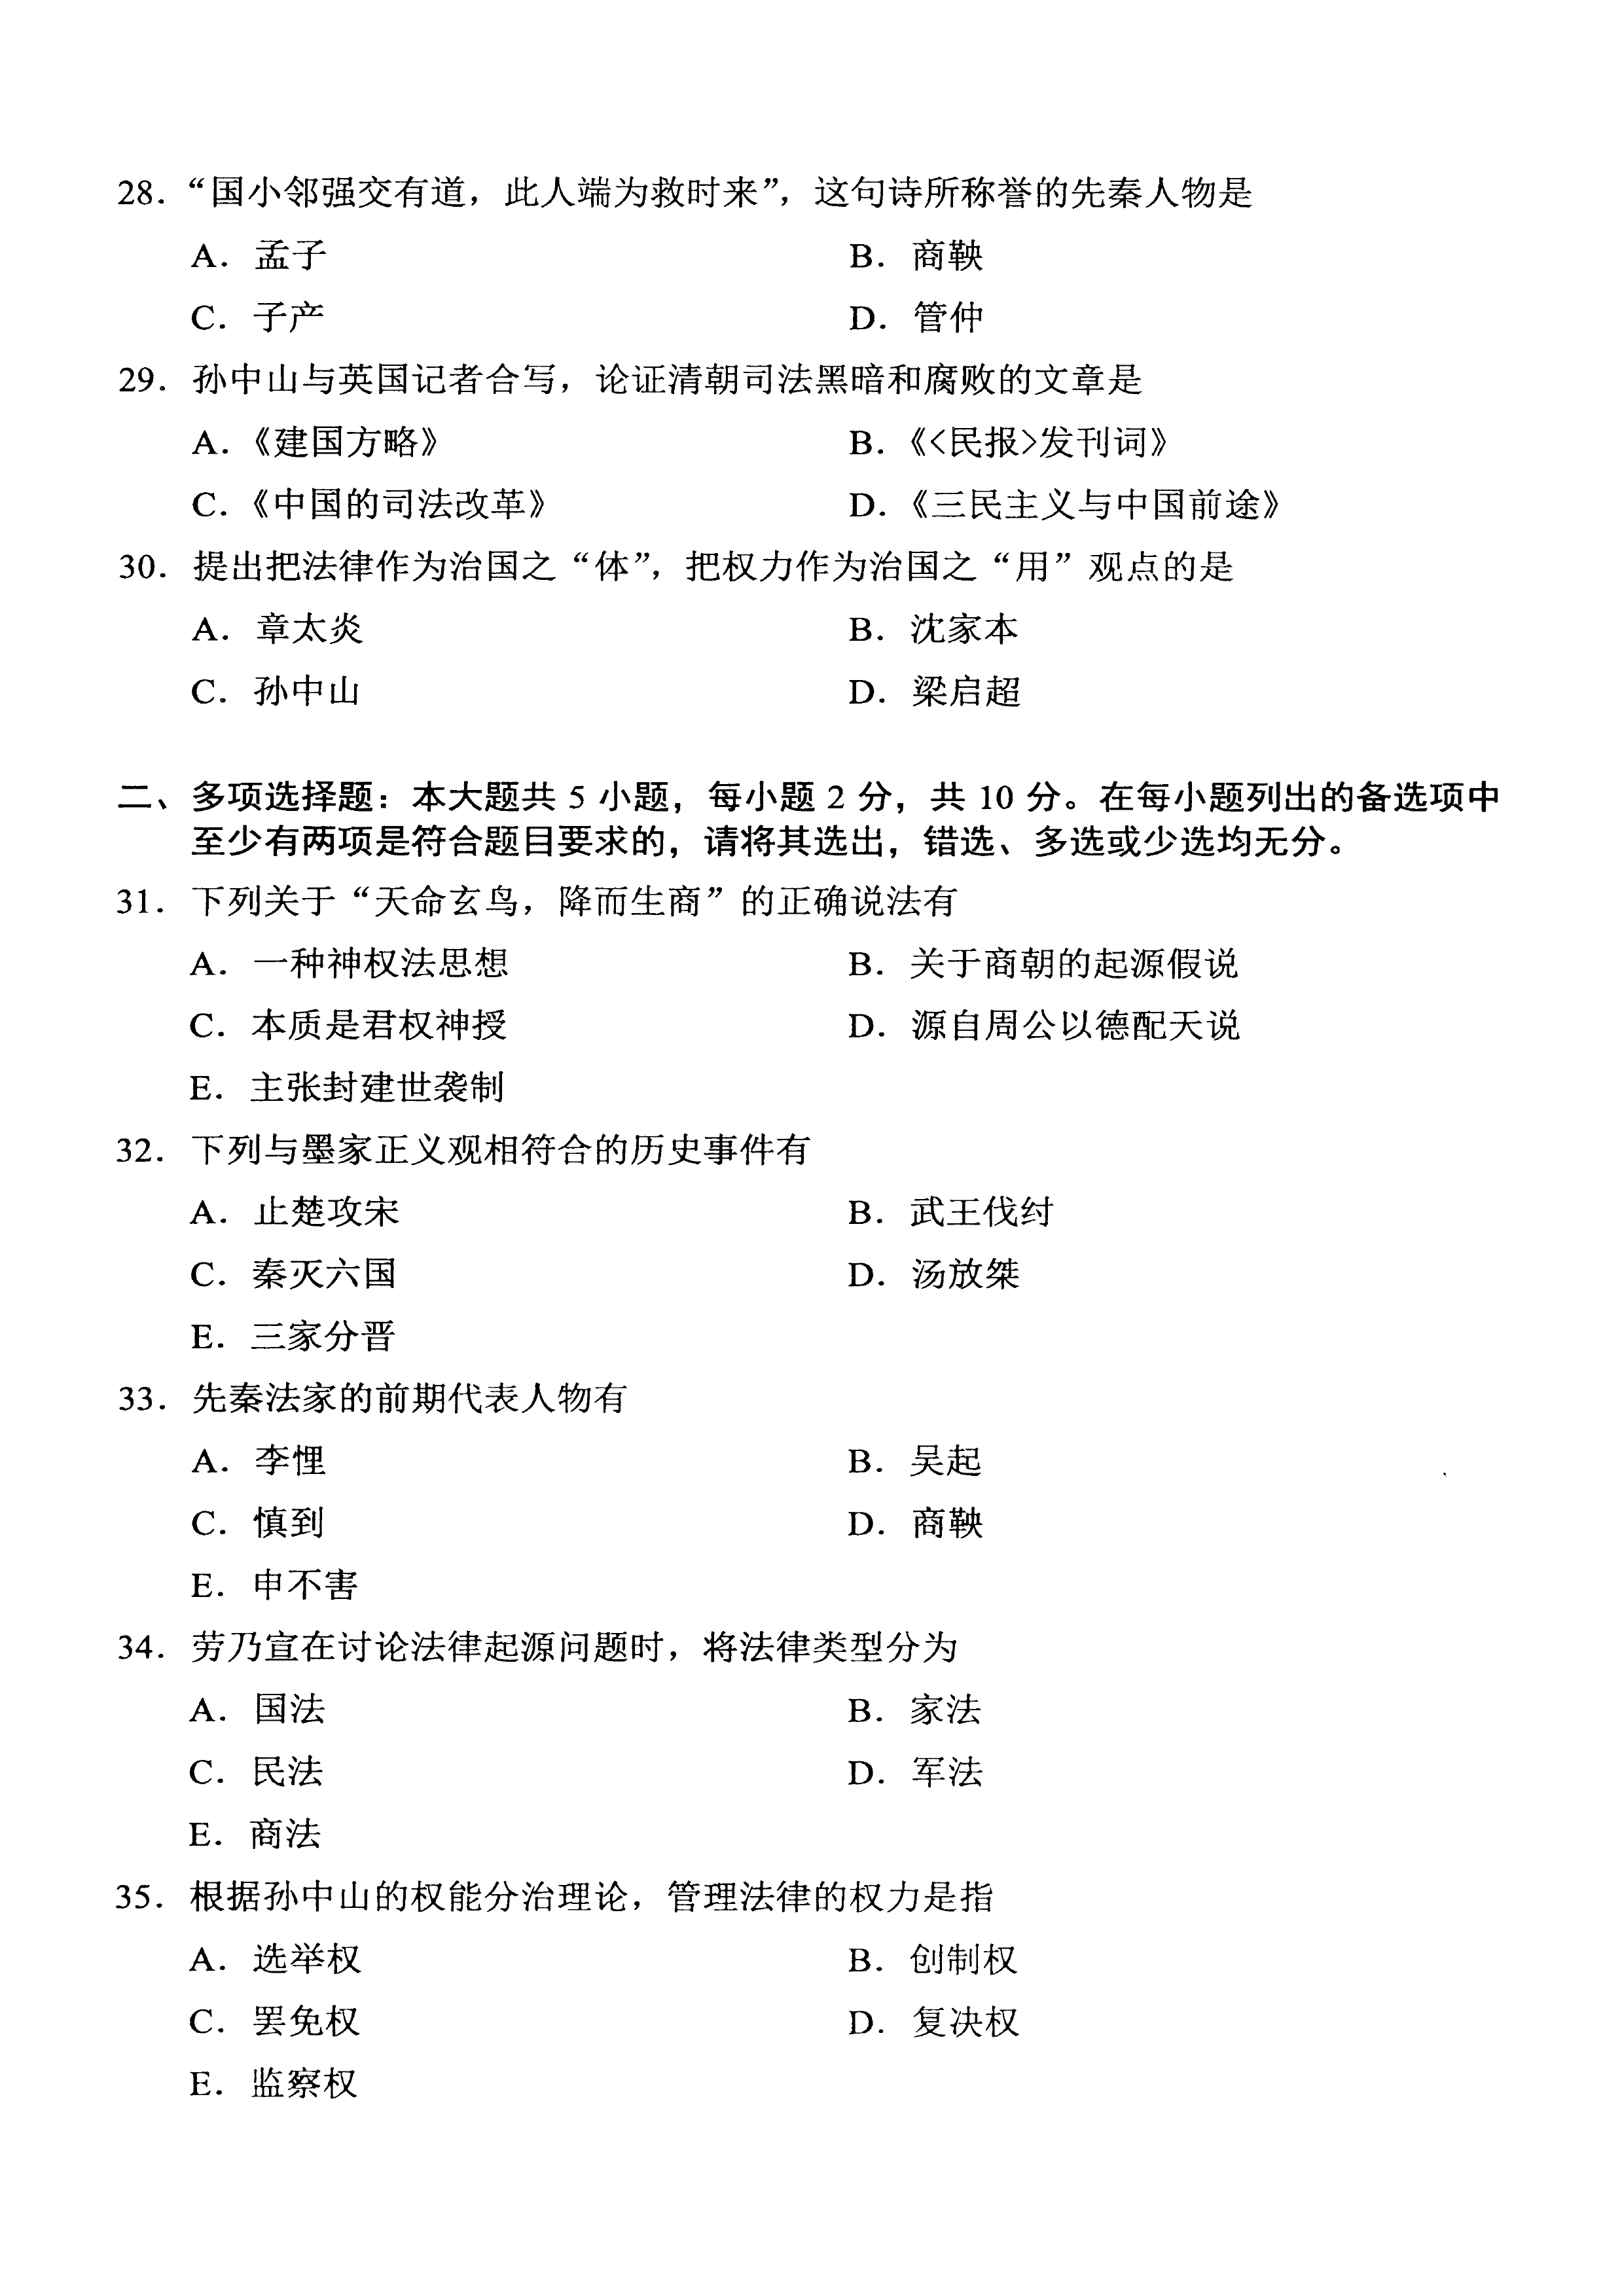 贵州自考2021年04月00264中国法律思想史真题及答案